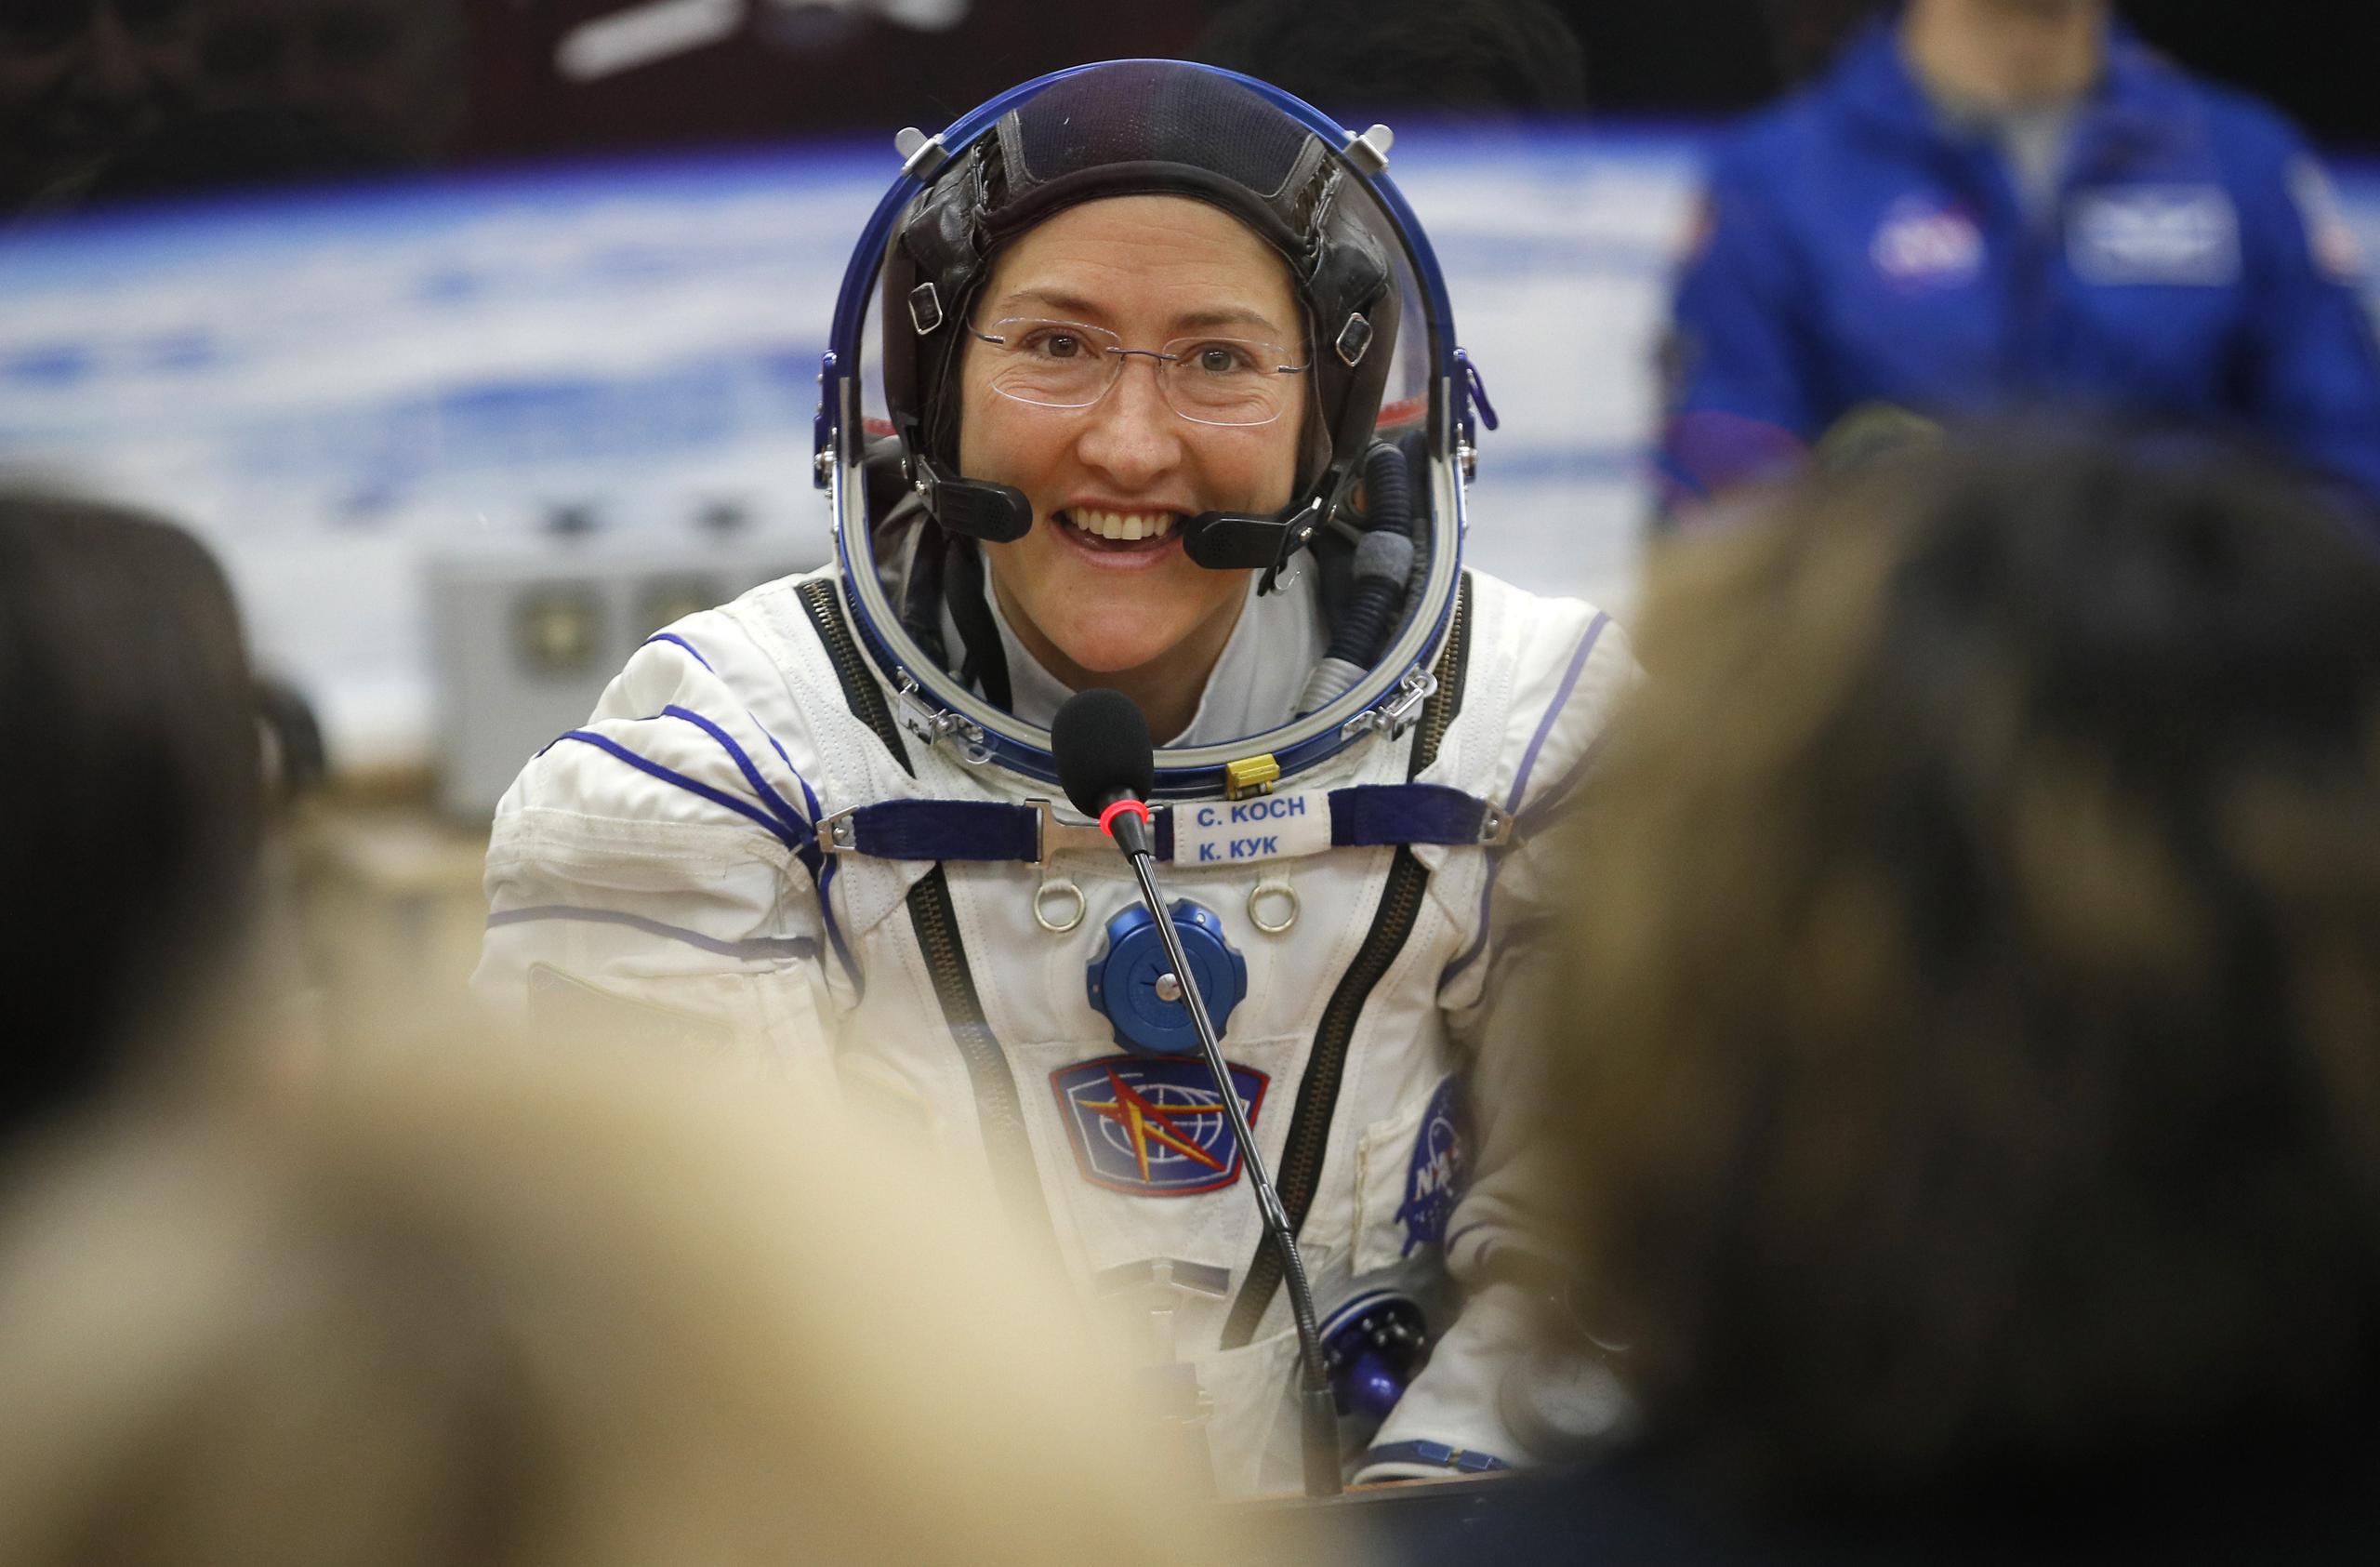 La astronauta Christina Koch, miembro de la tripulación de la Estación Espacial Internacional,  se expresó "muy emocionada y muy feliz" y una de las primera cosas que hizo fue hablar por teléfono, posiblemente con sus familiares. .